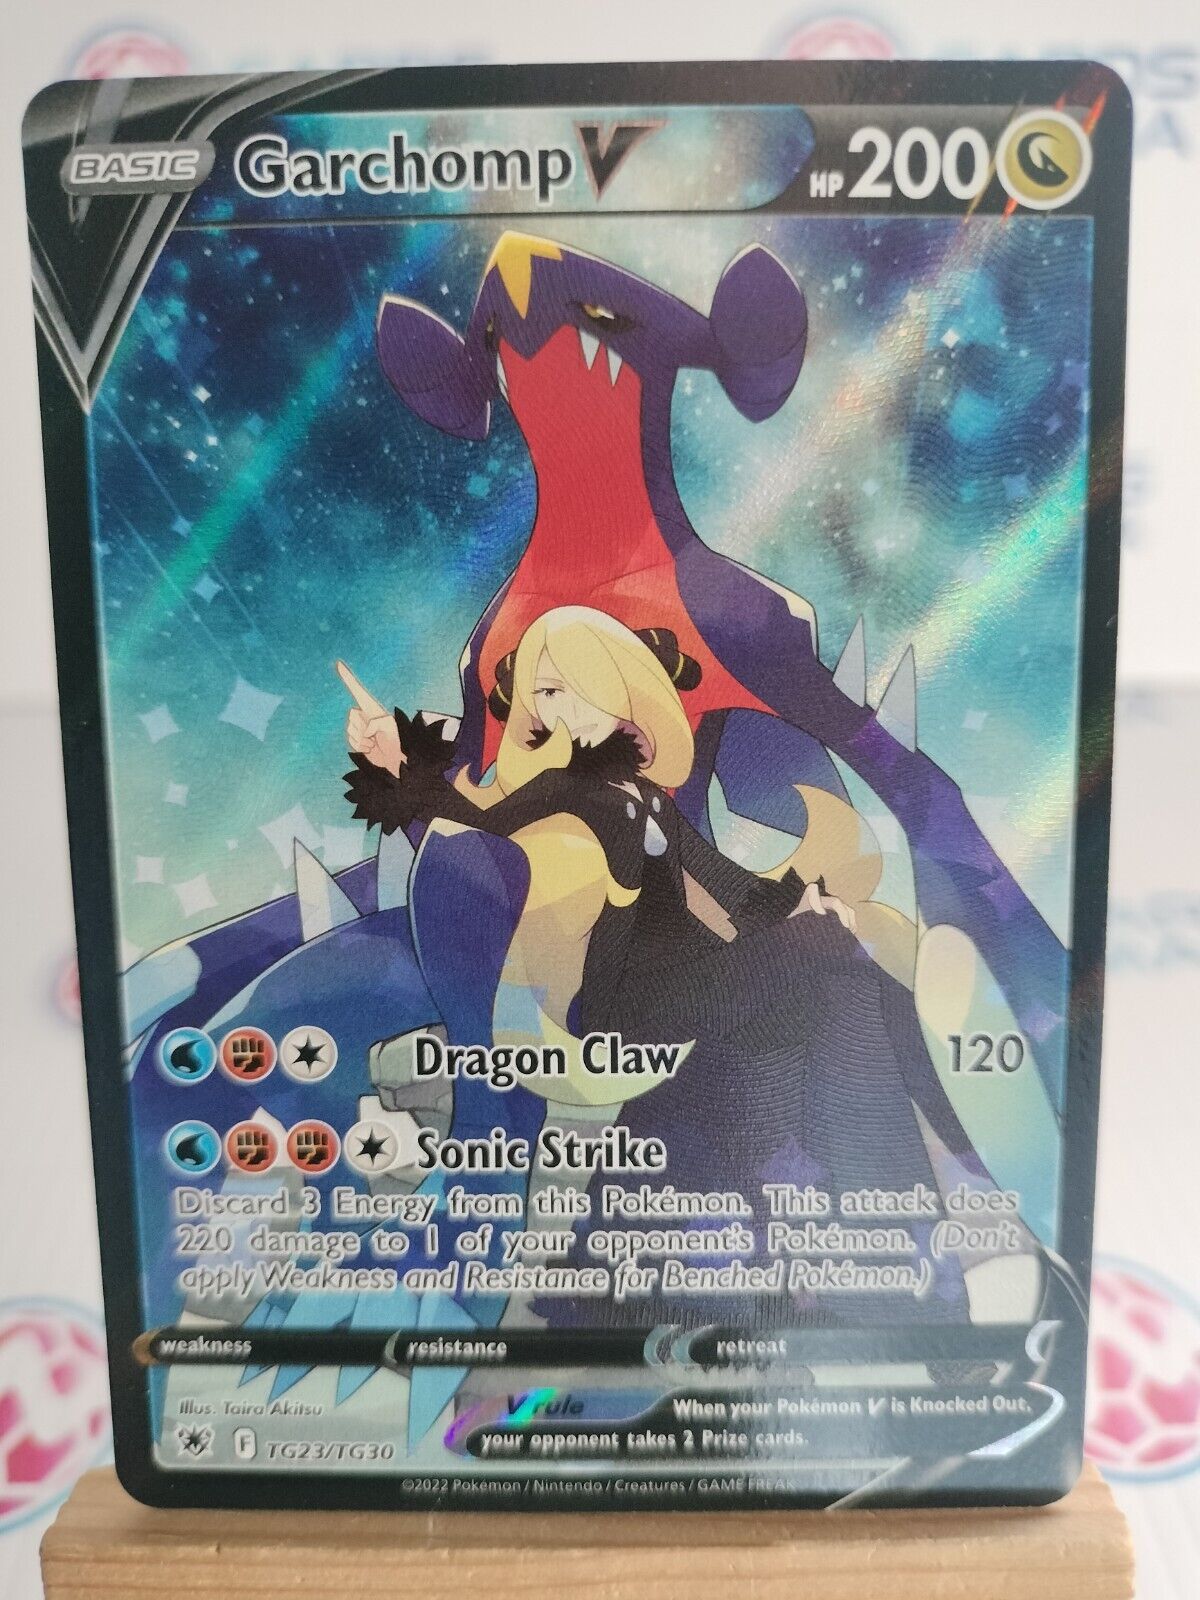 Garchomp V - TG23/TG30 Astral Radiance - Pokémon Card (21)